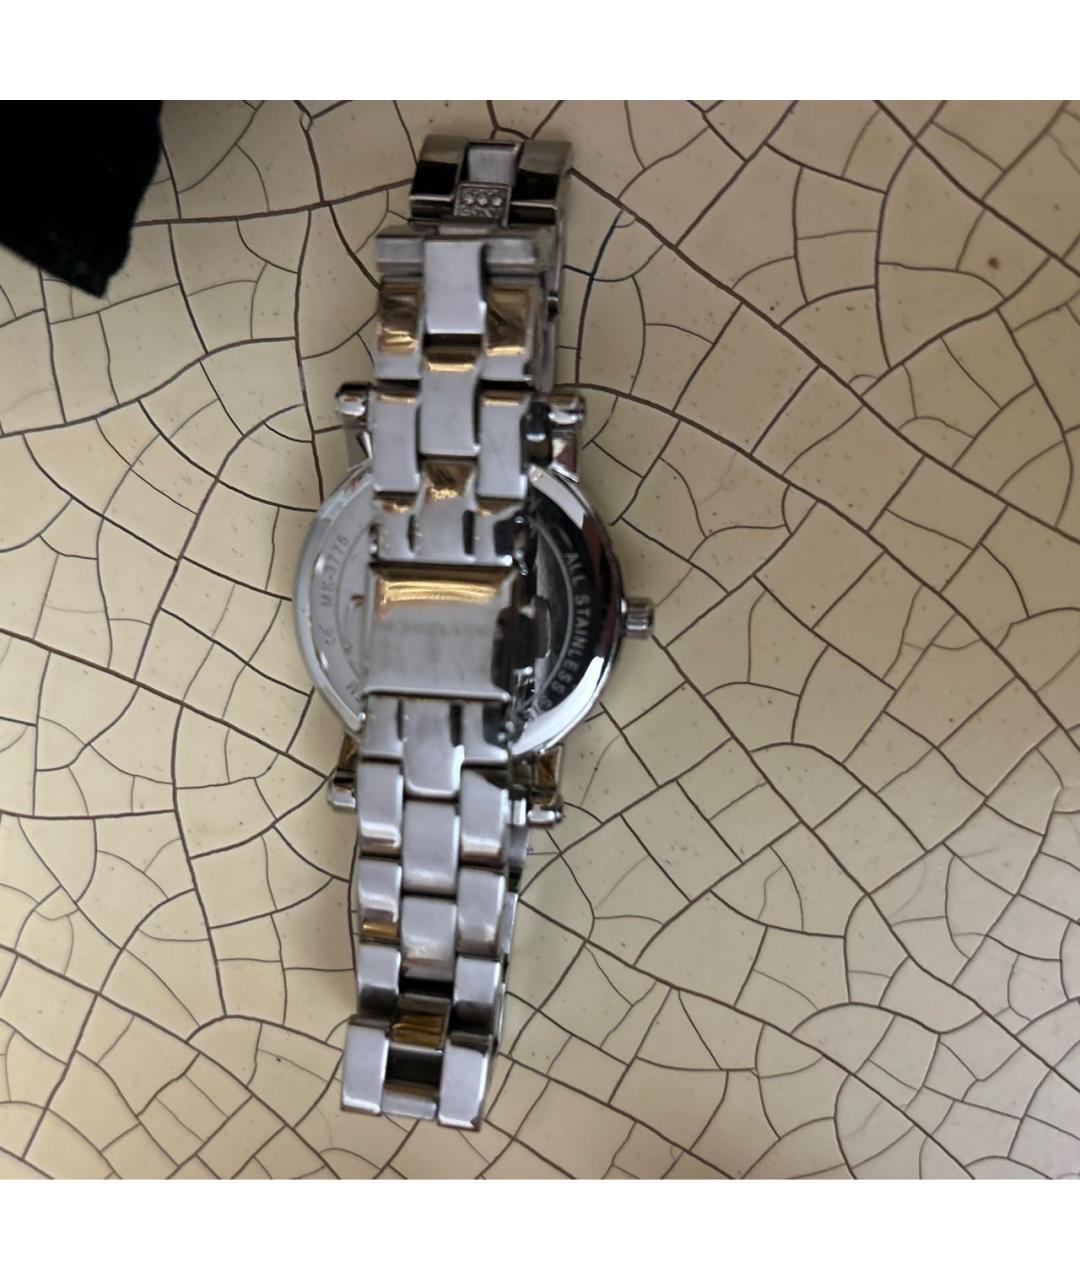 MICHAEL KORS Серебряные стальные часы, фото 2